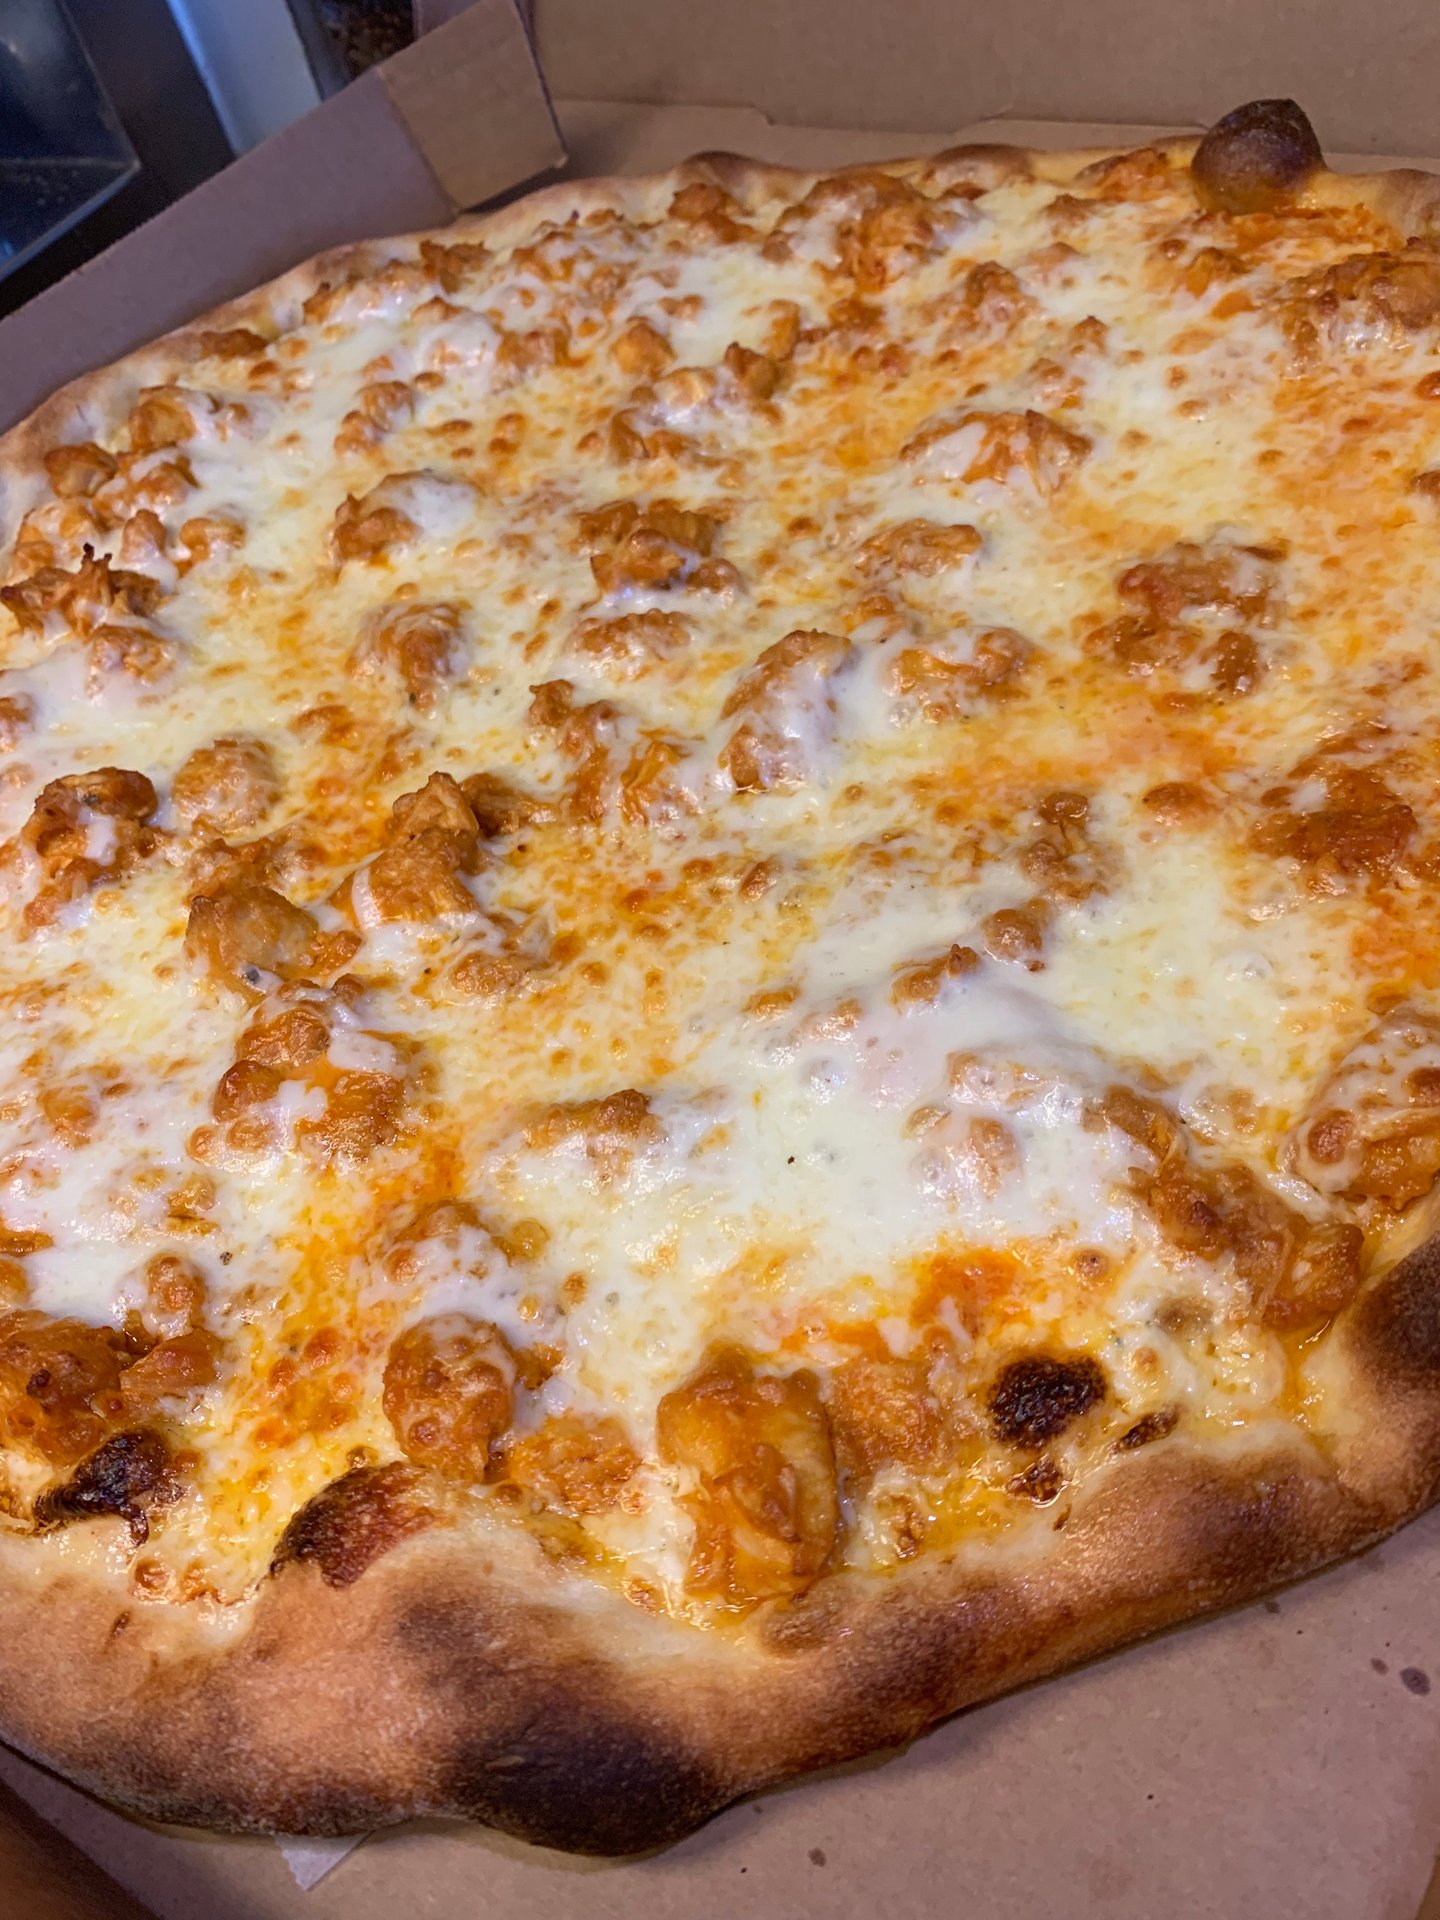 Order Online - Pienezza Pizza - Pizza Restaurant in Kissimmee, FL